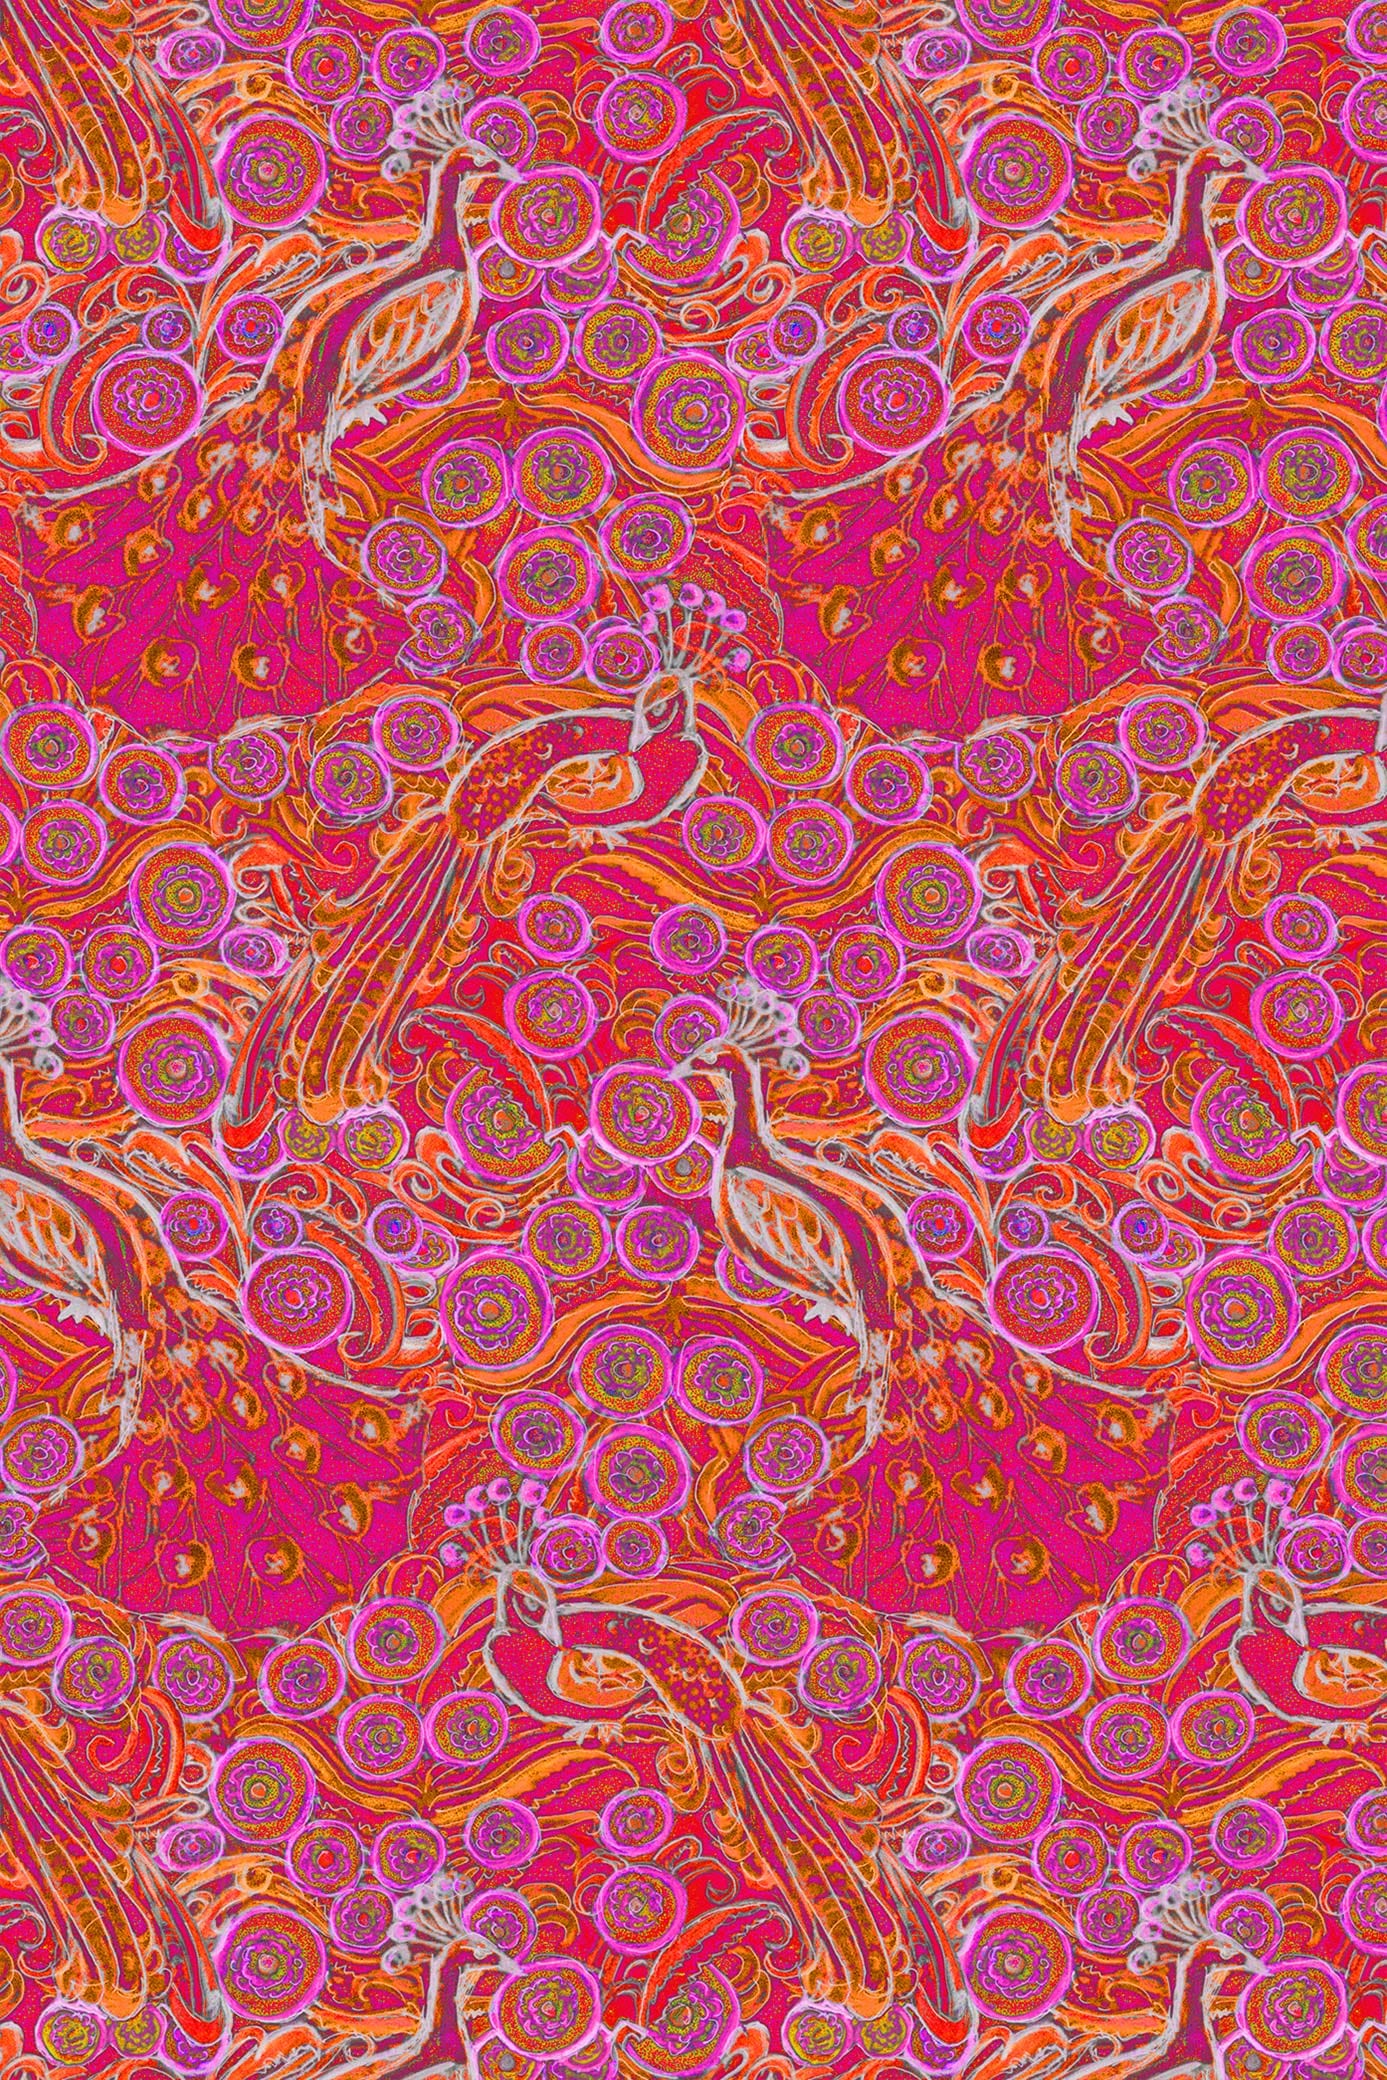 W.E.T. by Ines Schneider Dress Ariadne / Pavone mode hamburg print sommerkleid Unique Prints Summer Dress Handdesignierte Prints Print